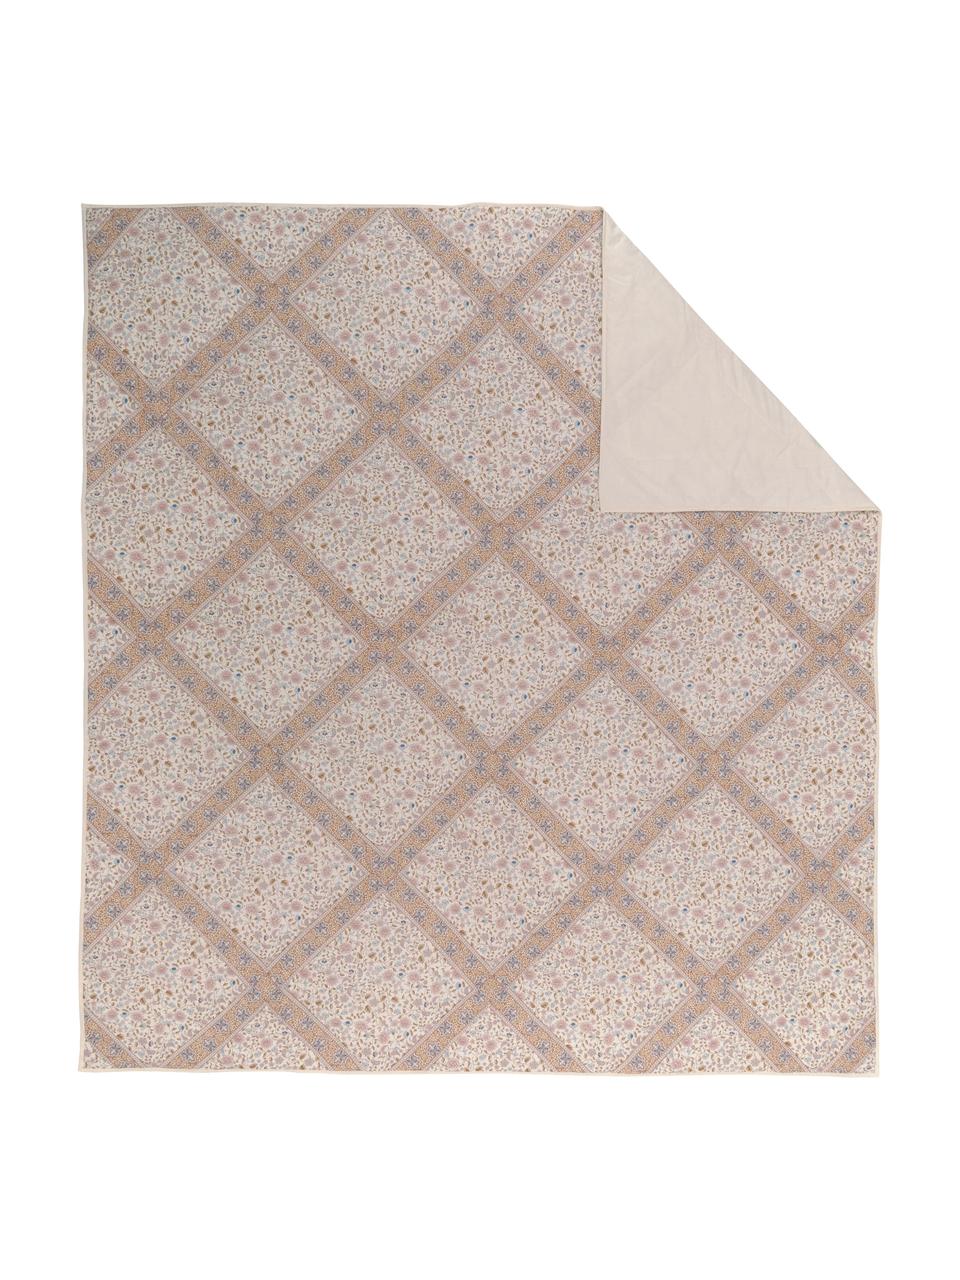 Wattierte Tagesdecke Lilou mit Paisley-Muster, Bezug: 100% Baumwolle, Hellbeige, Mehrfarbig, B 260 x L 260 cm (für Betten bis 200 x 200 cm)